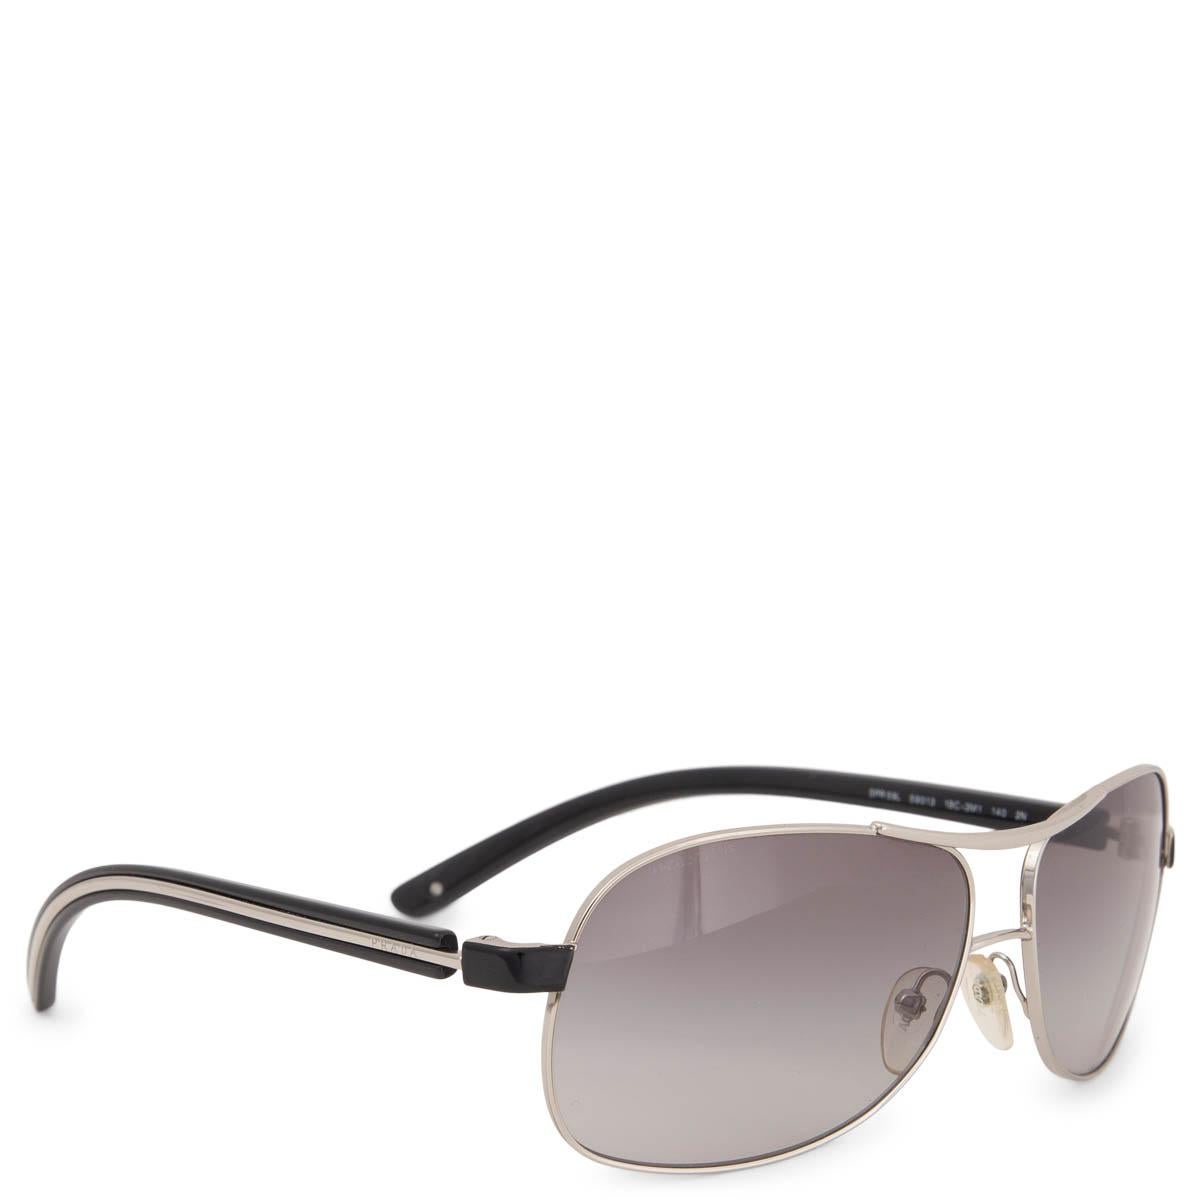 100% authentiques lunettes de soleil Prada SPR 59L composées d'une monture en métal de couleur argentée avec des verres dégradés gris clair et des branches en acétate noir. Ils ont été portés et sont en excellent état. Livré avec étui et boîte.